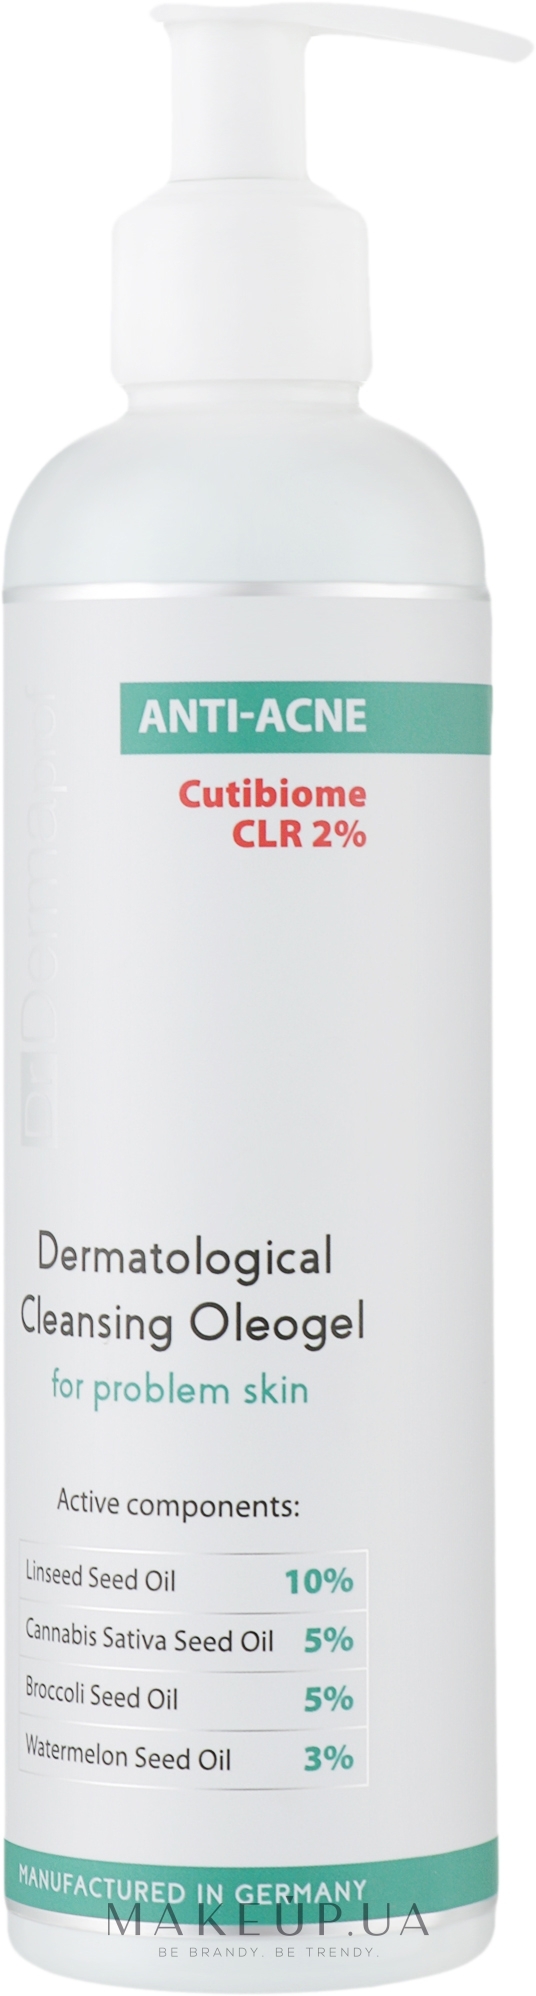 Дерматологічний очищувальний олеогель для проблемної шкіри - Dr. Dermaprof Anti-Acne Dermatological Cleansing Oleogel For Problem Skin — фото 250ml